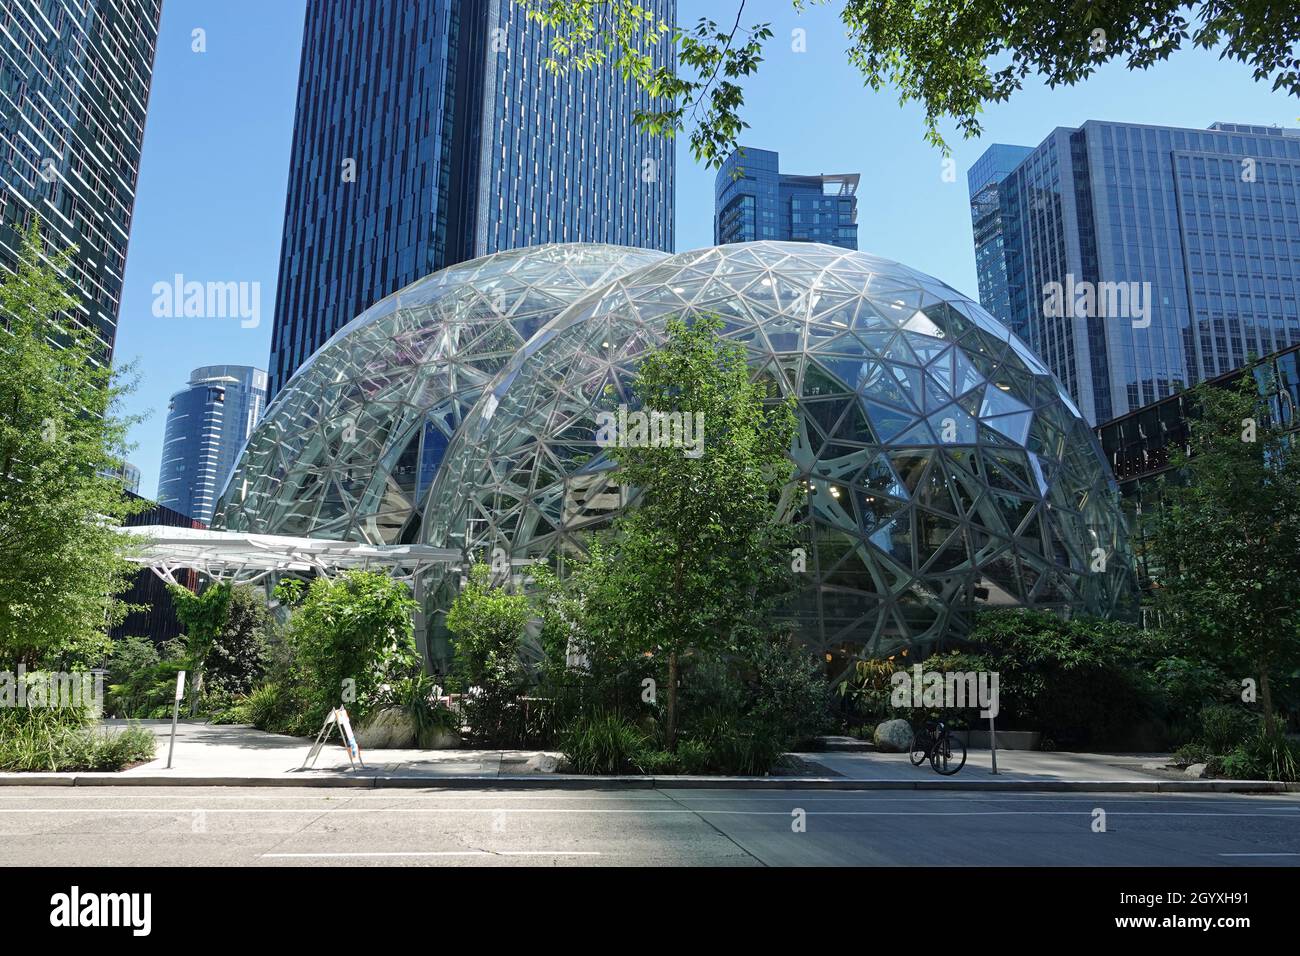 Seattle, WA / USA - 26. Juni 2021: Das ultramoderne Glas-Bürogebäude, bekannt als die Amazon Spheres (oder Seattle Spheres), wird tagsüber gezeigt. Stockfoto